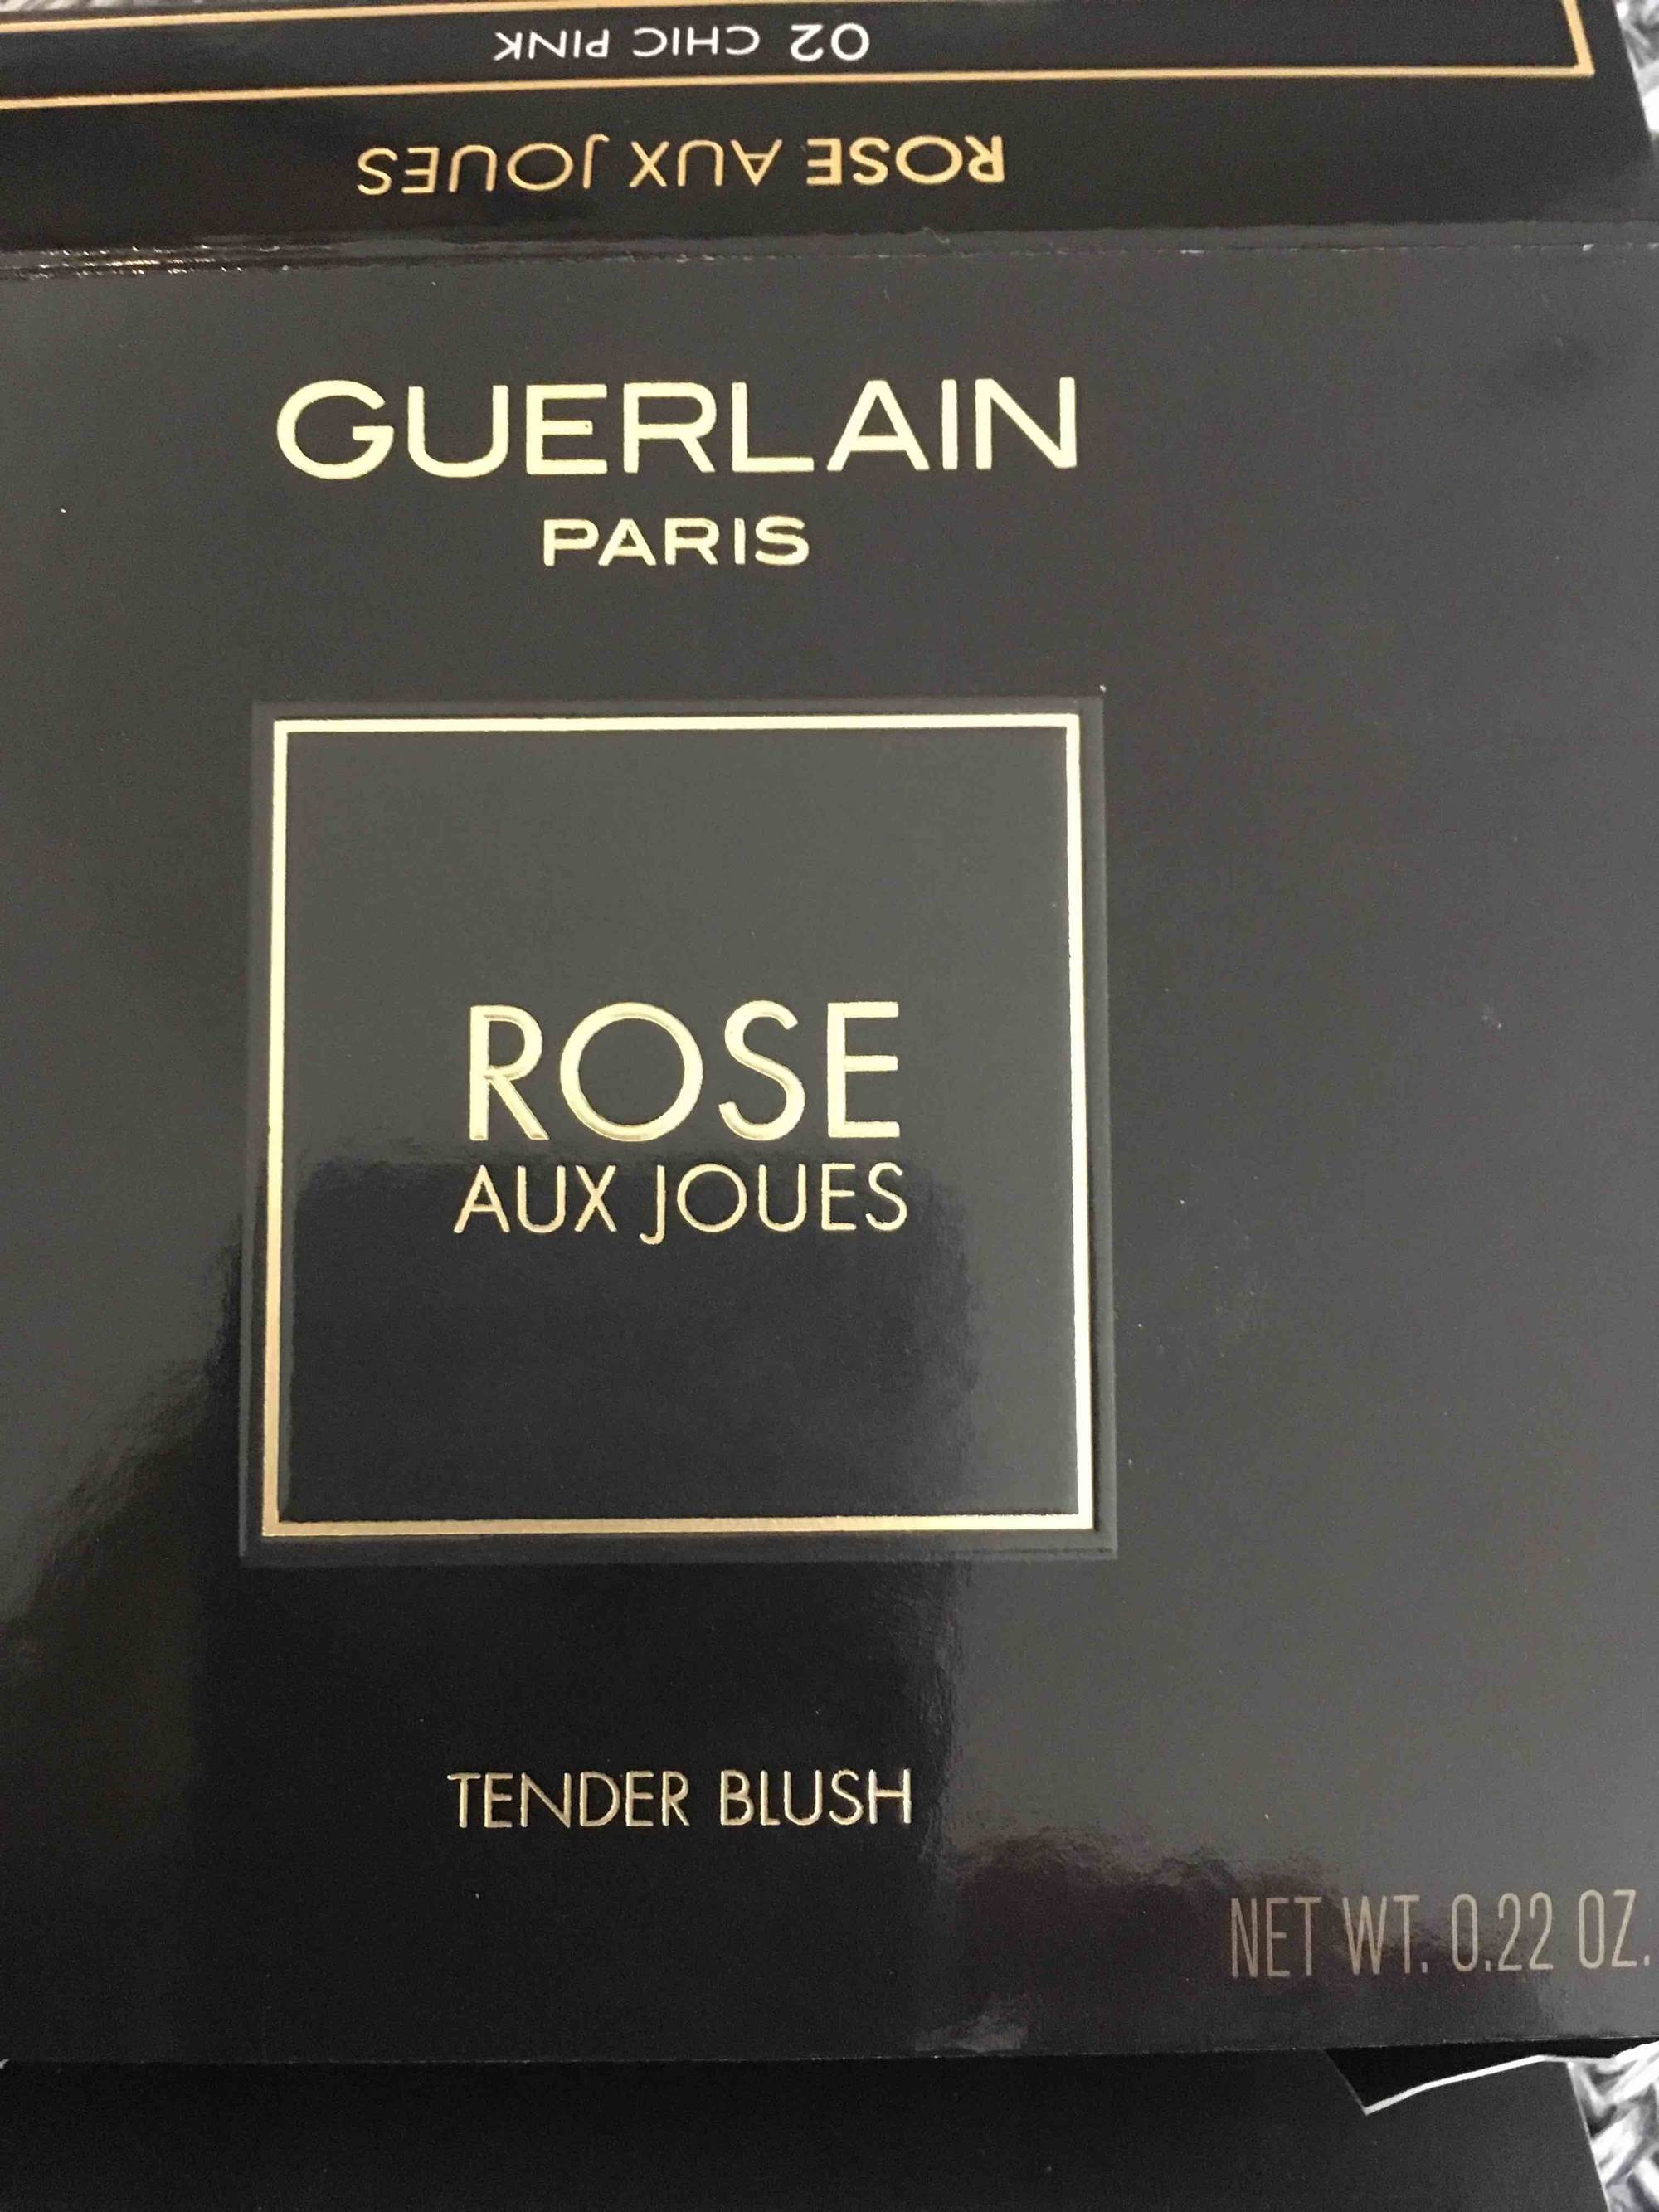 GUERLAIN - Rose aux joues - Tender blush